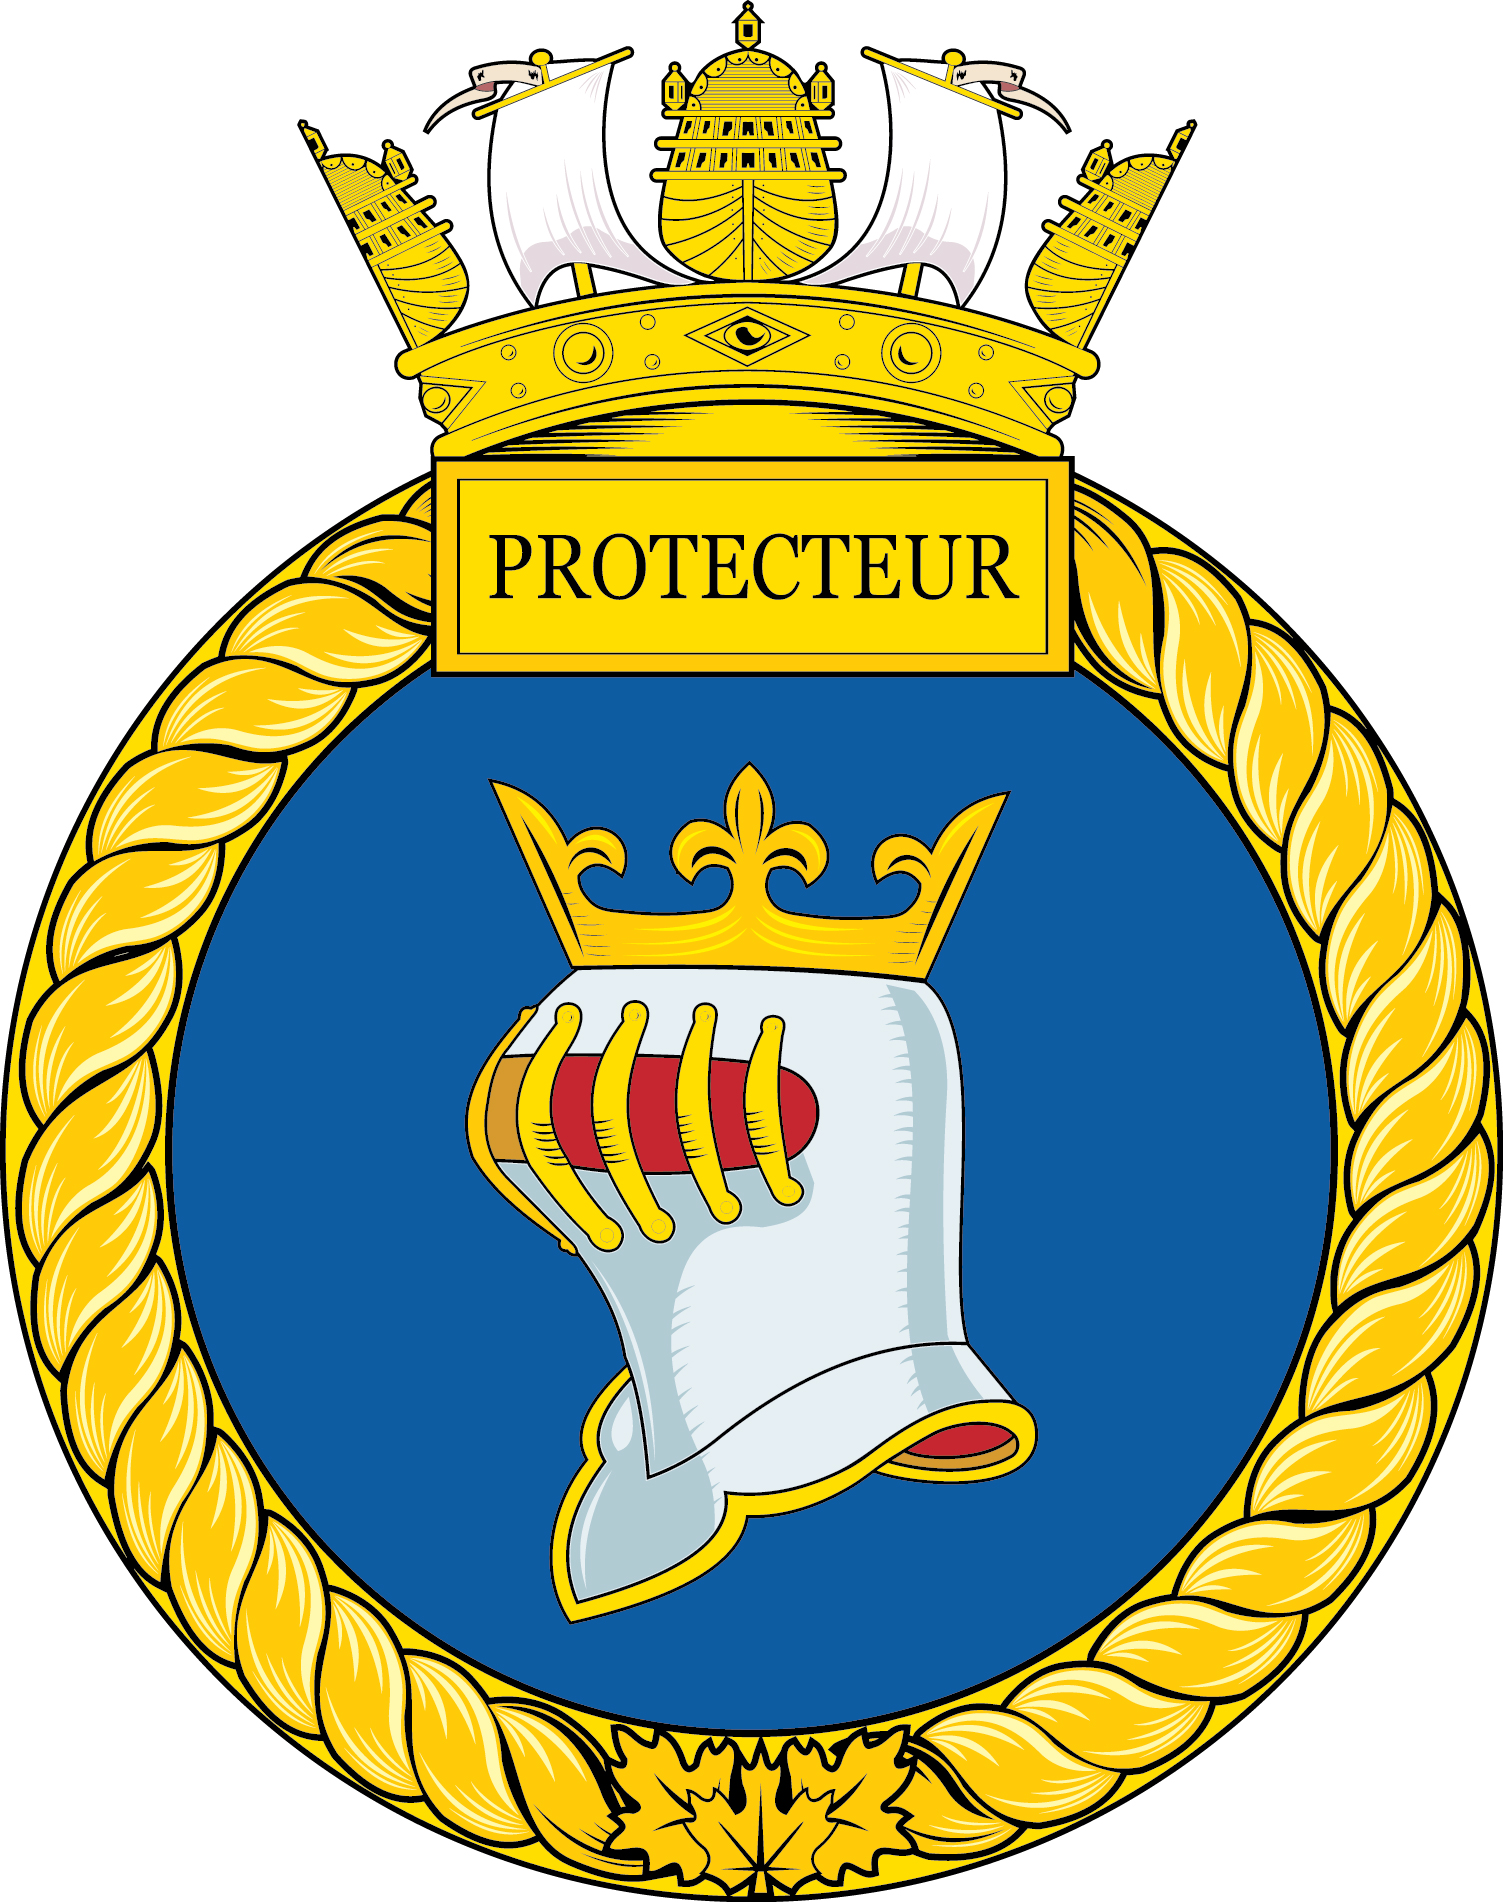 HMCS Protecteur